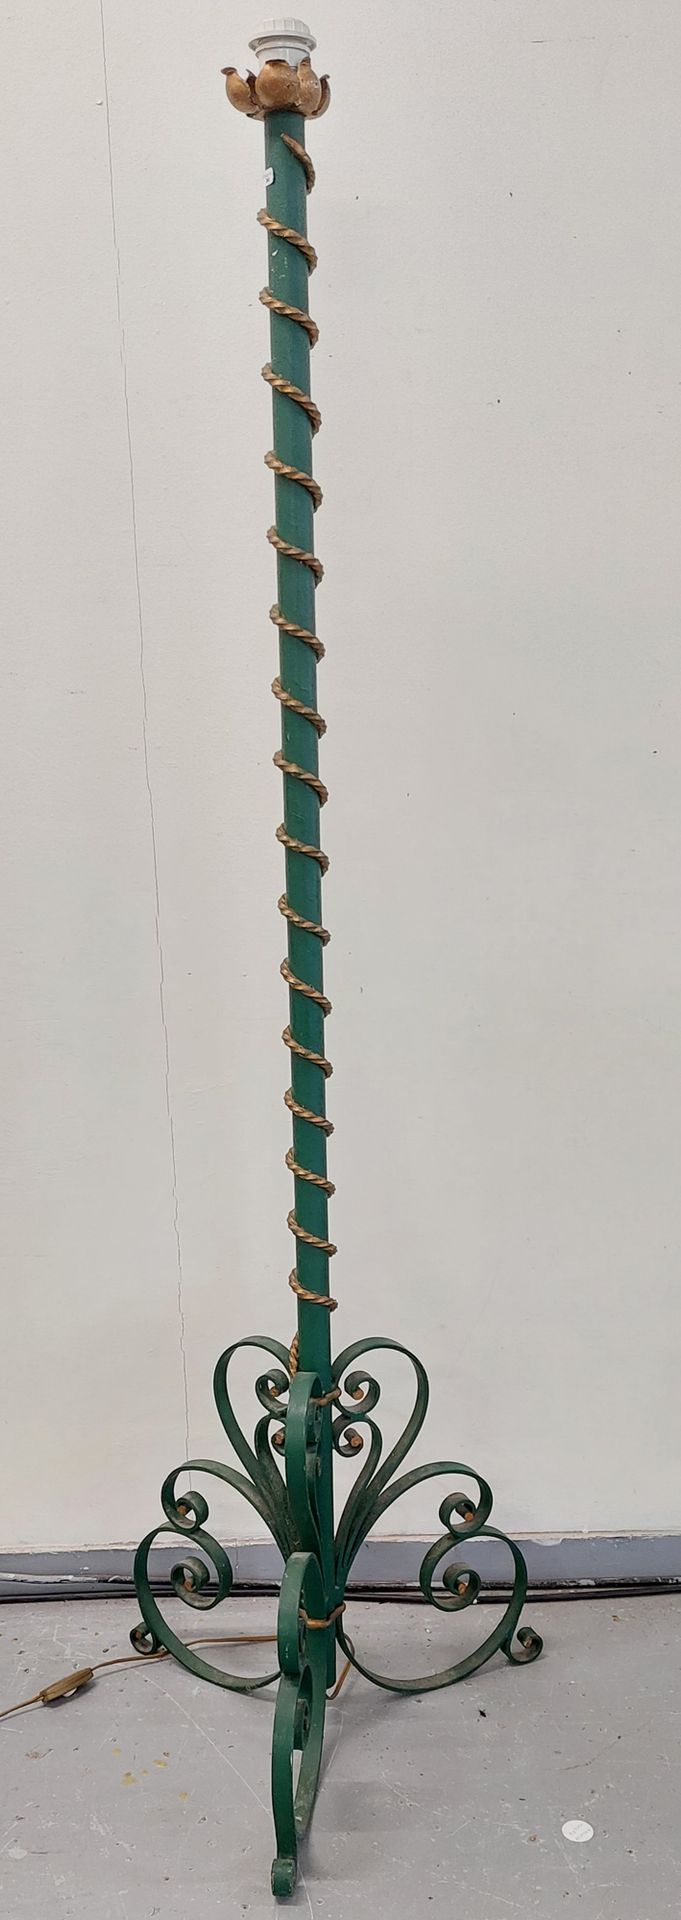 Null LAMPADAIRE en fer forgé peint en vert et doré

H : 167 cm